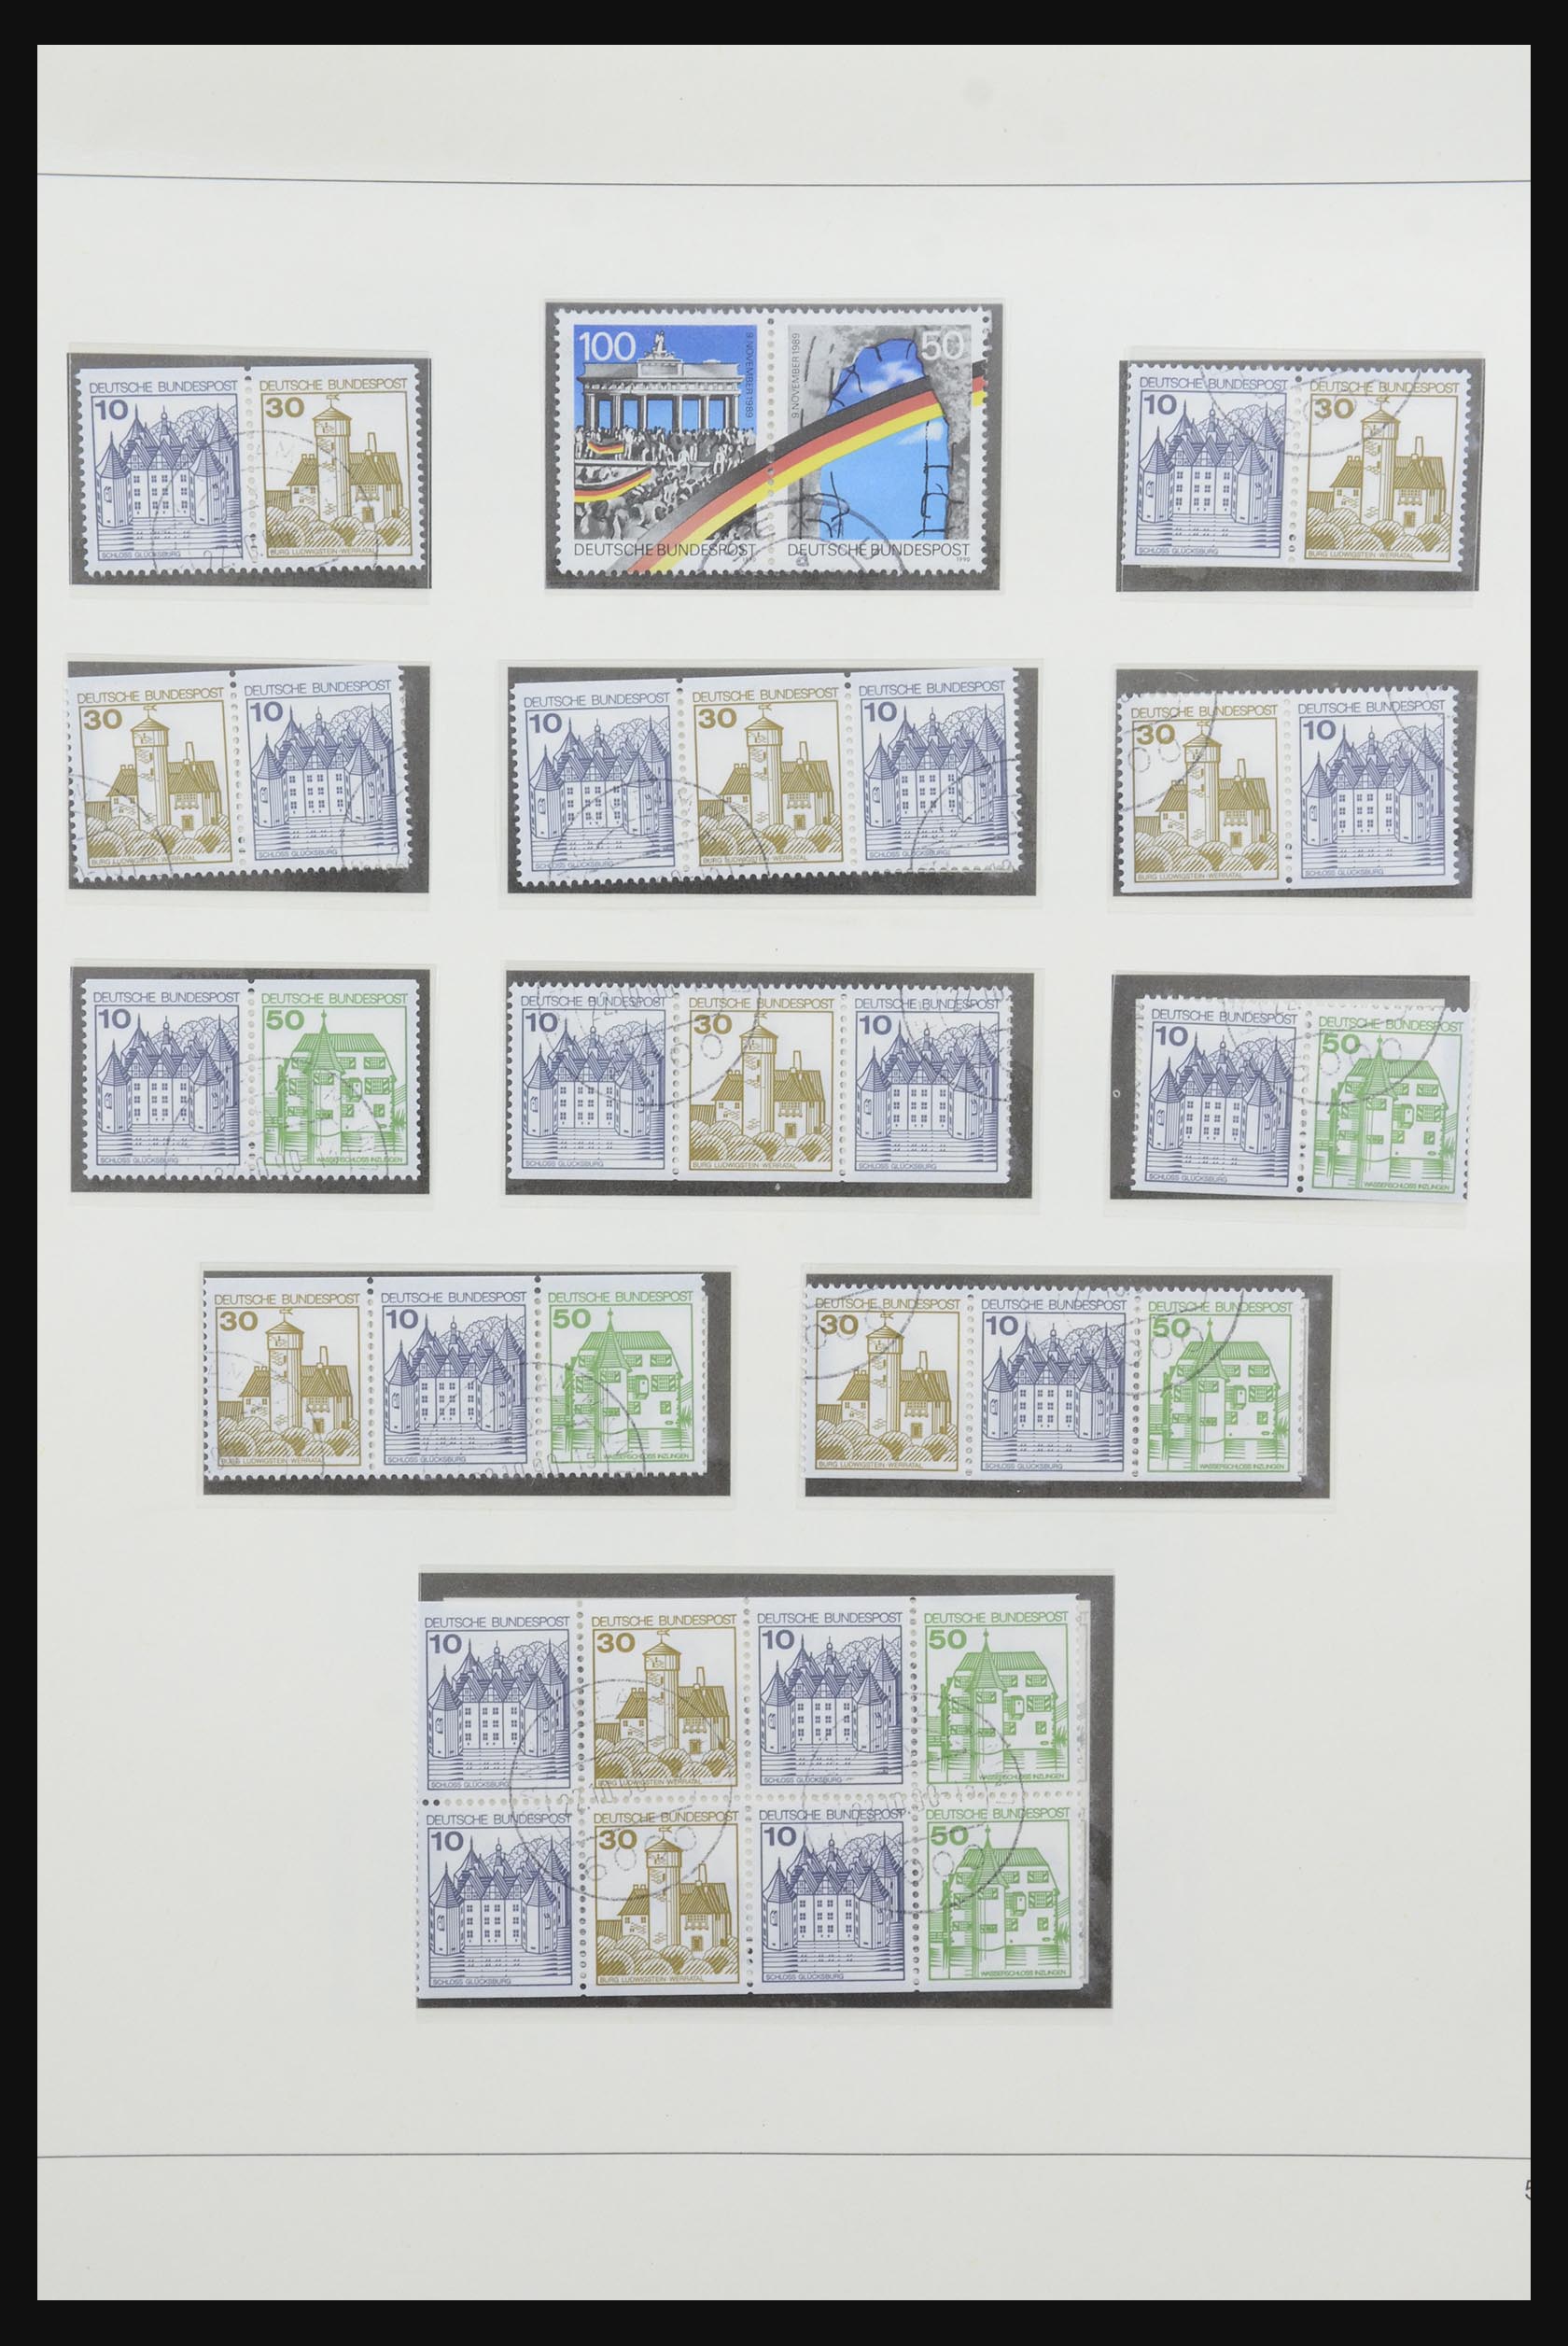 31842 073 - 31842 Bundespost combinations 1951-2003.